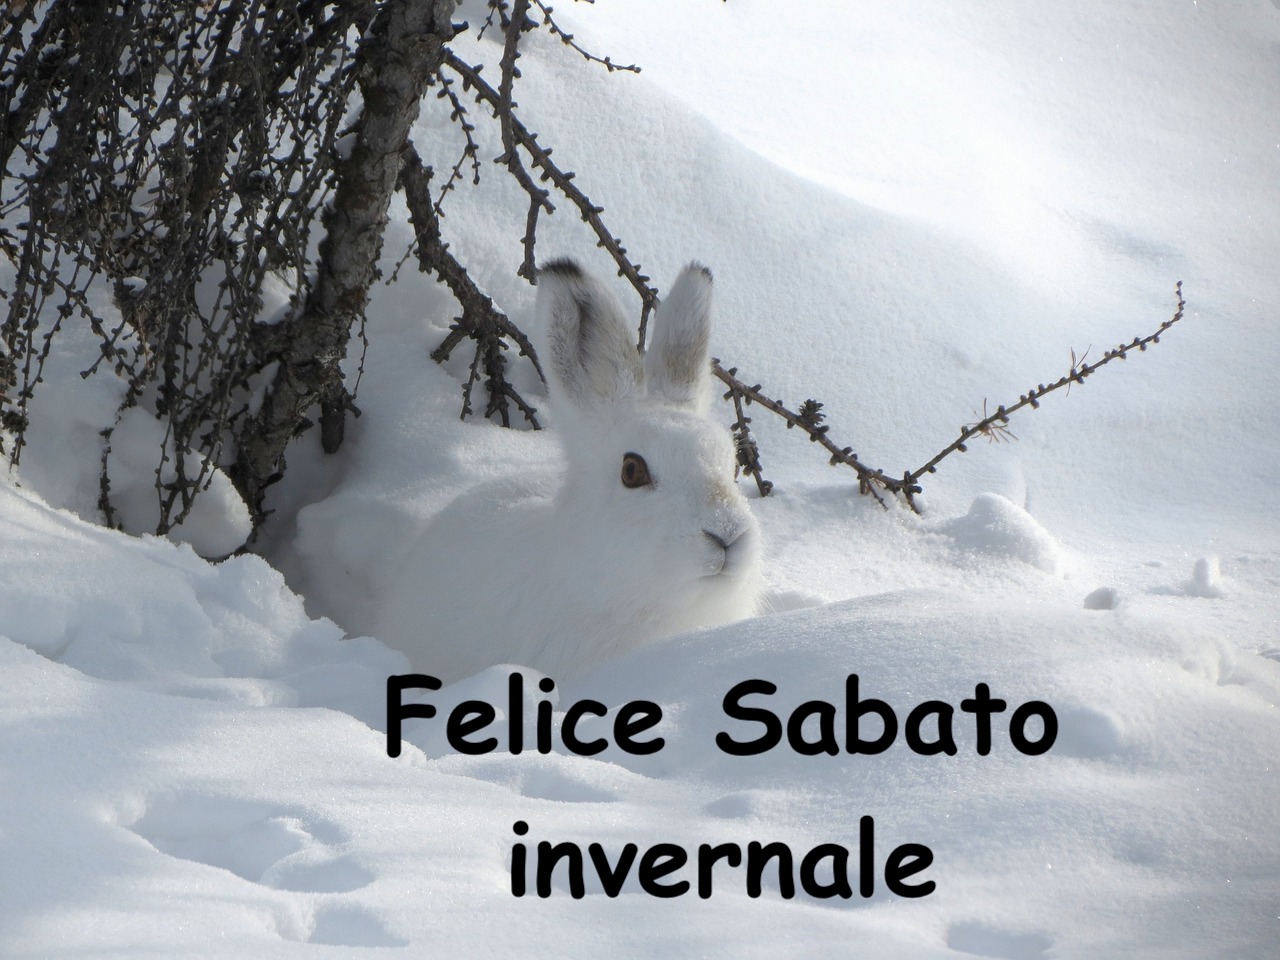  un coniglio bianco intorno alle impronte di neve accanto ad un albero senza foglie